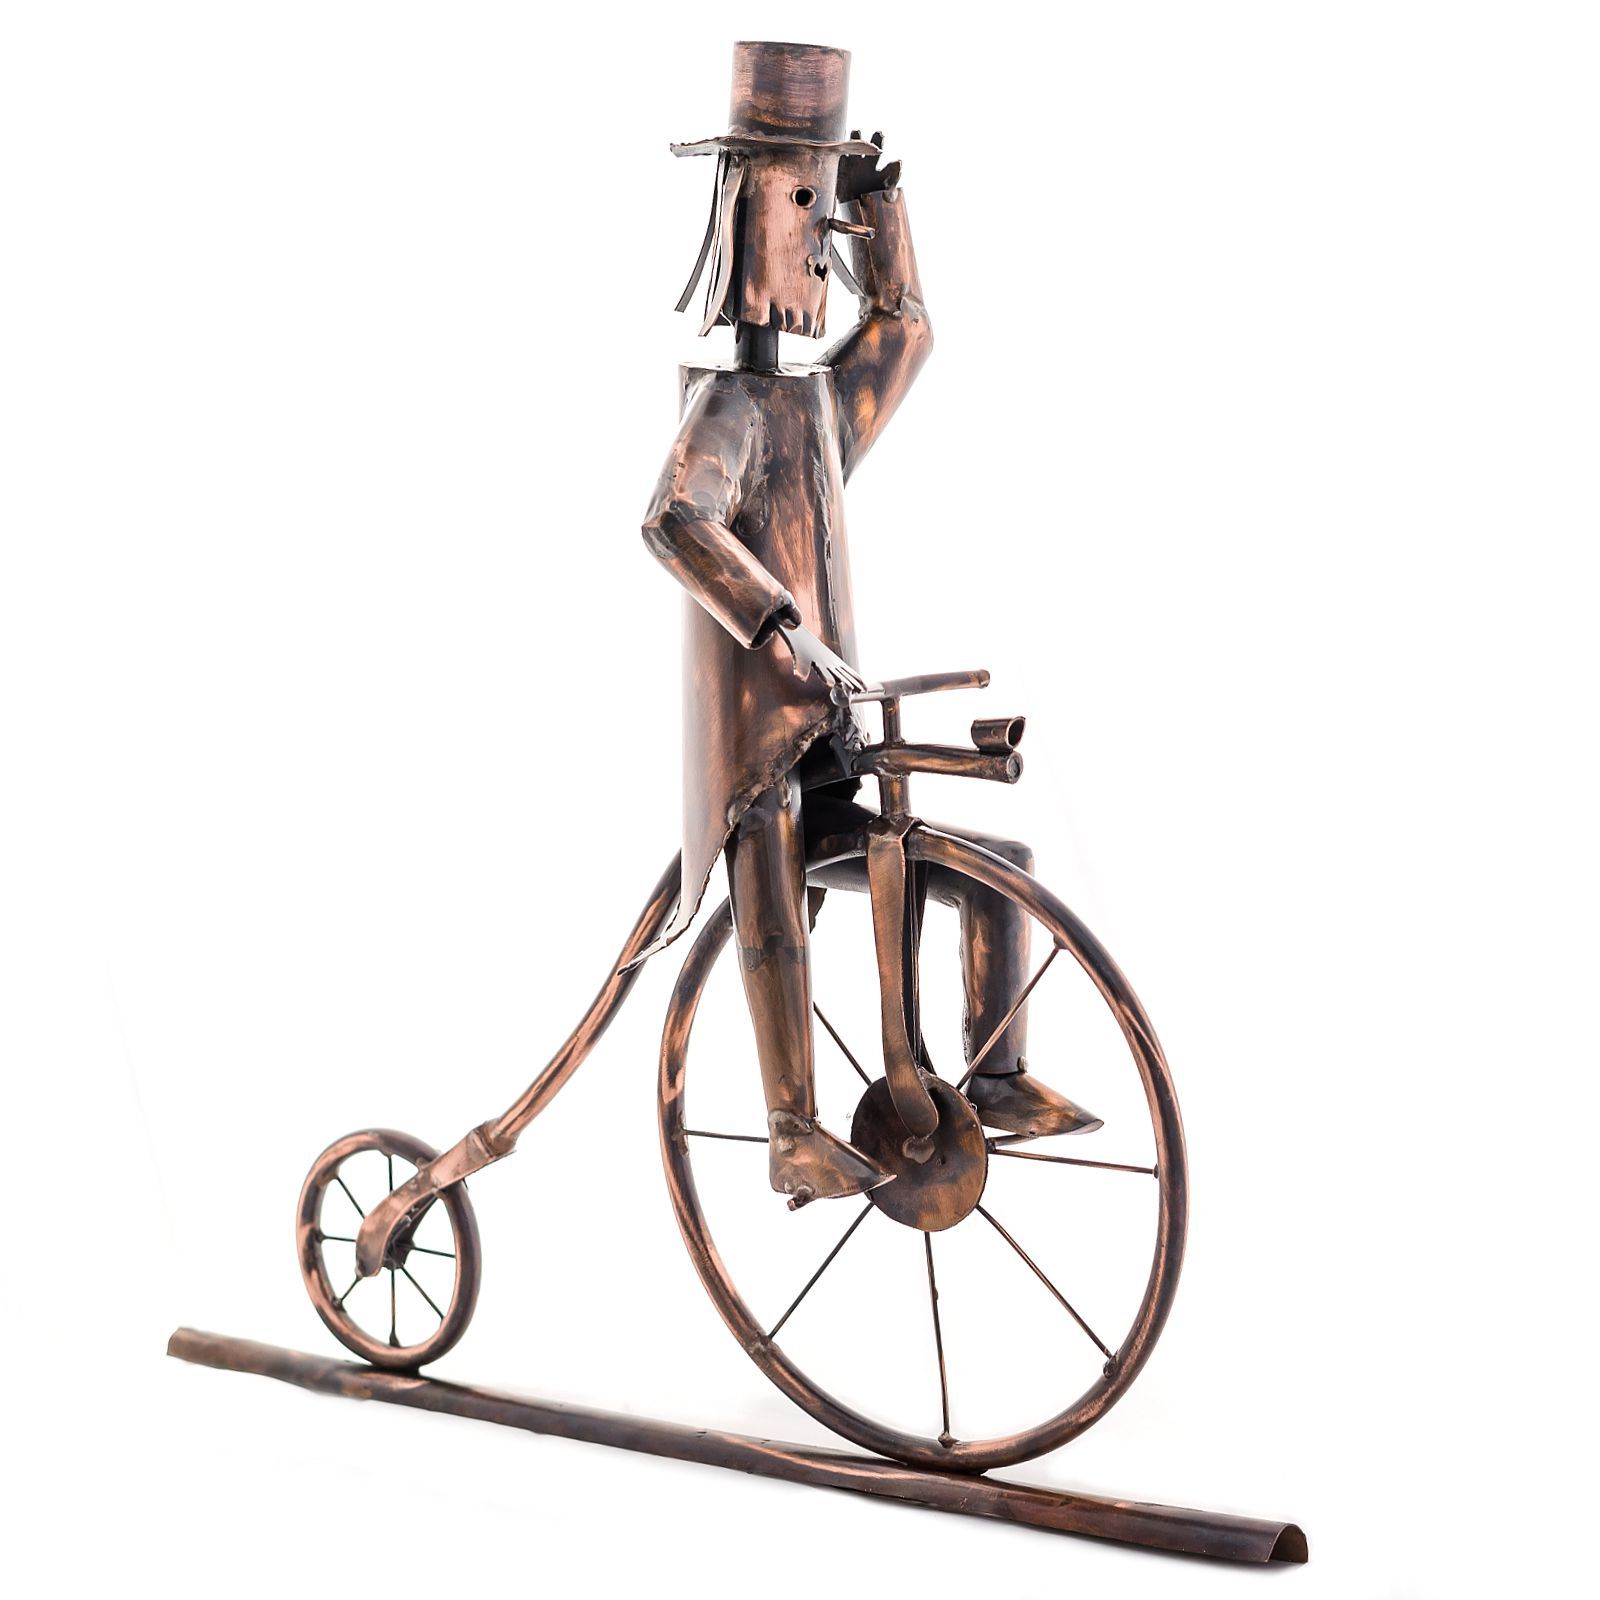 Figura in rame per la grondaia, cavaliere del penny-farthing, bicicletta storica